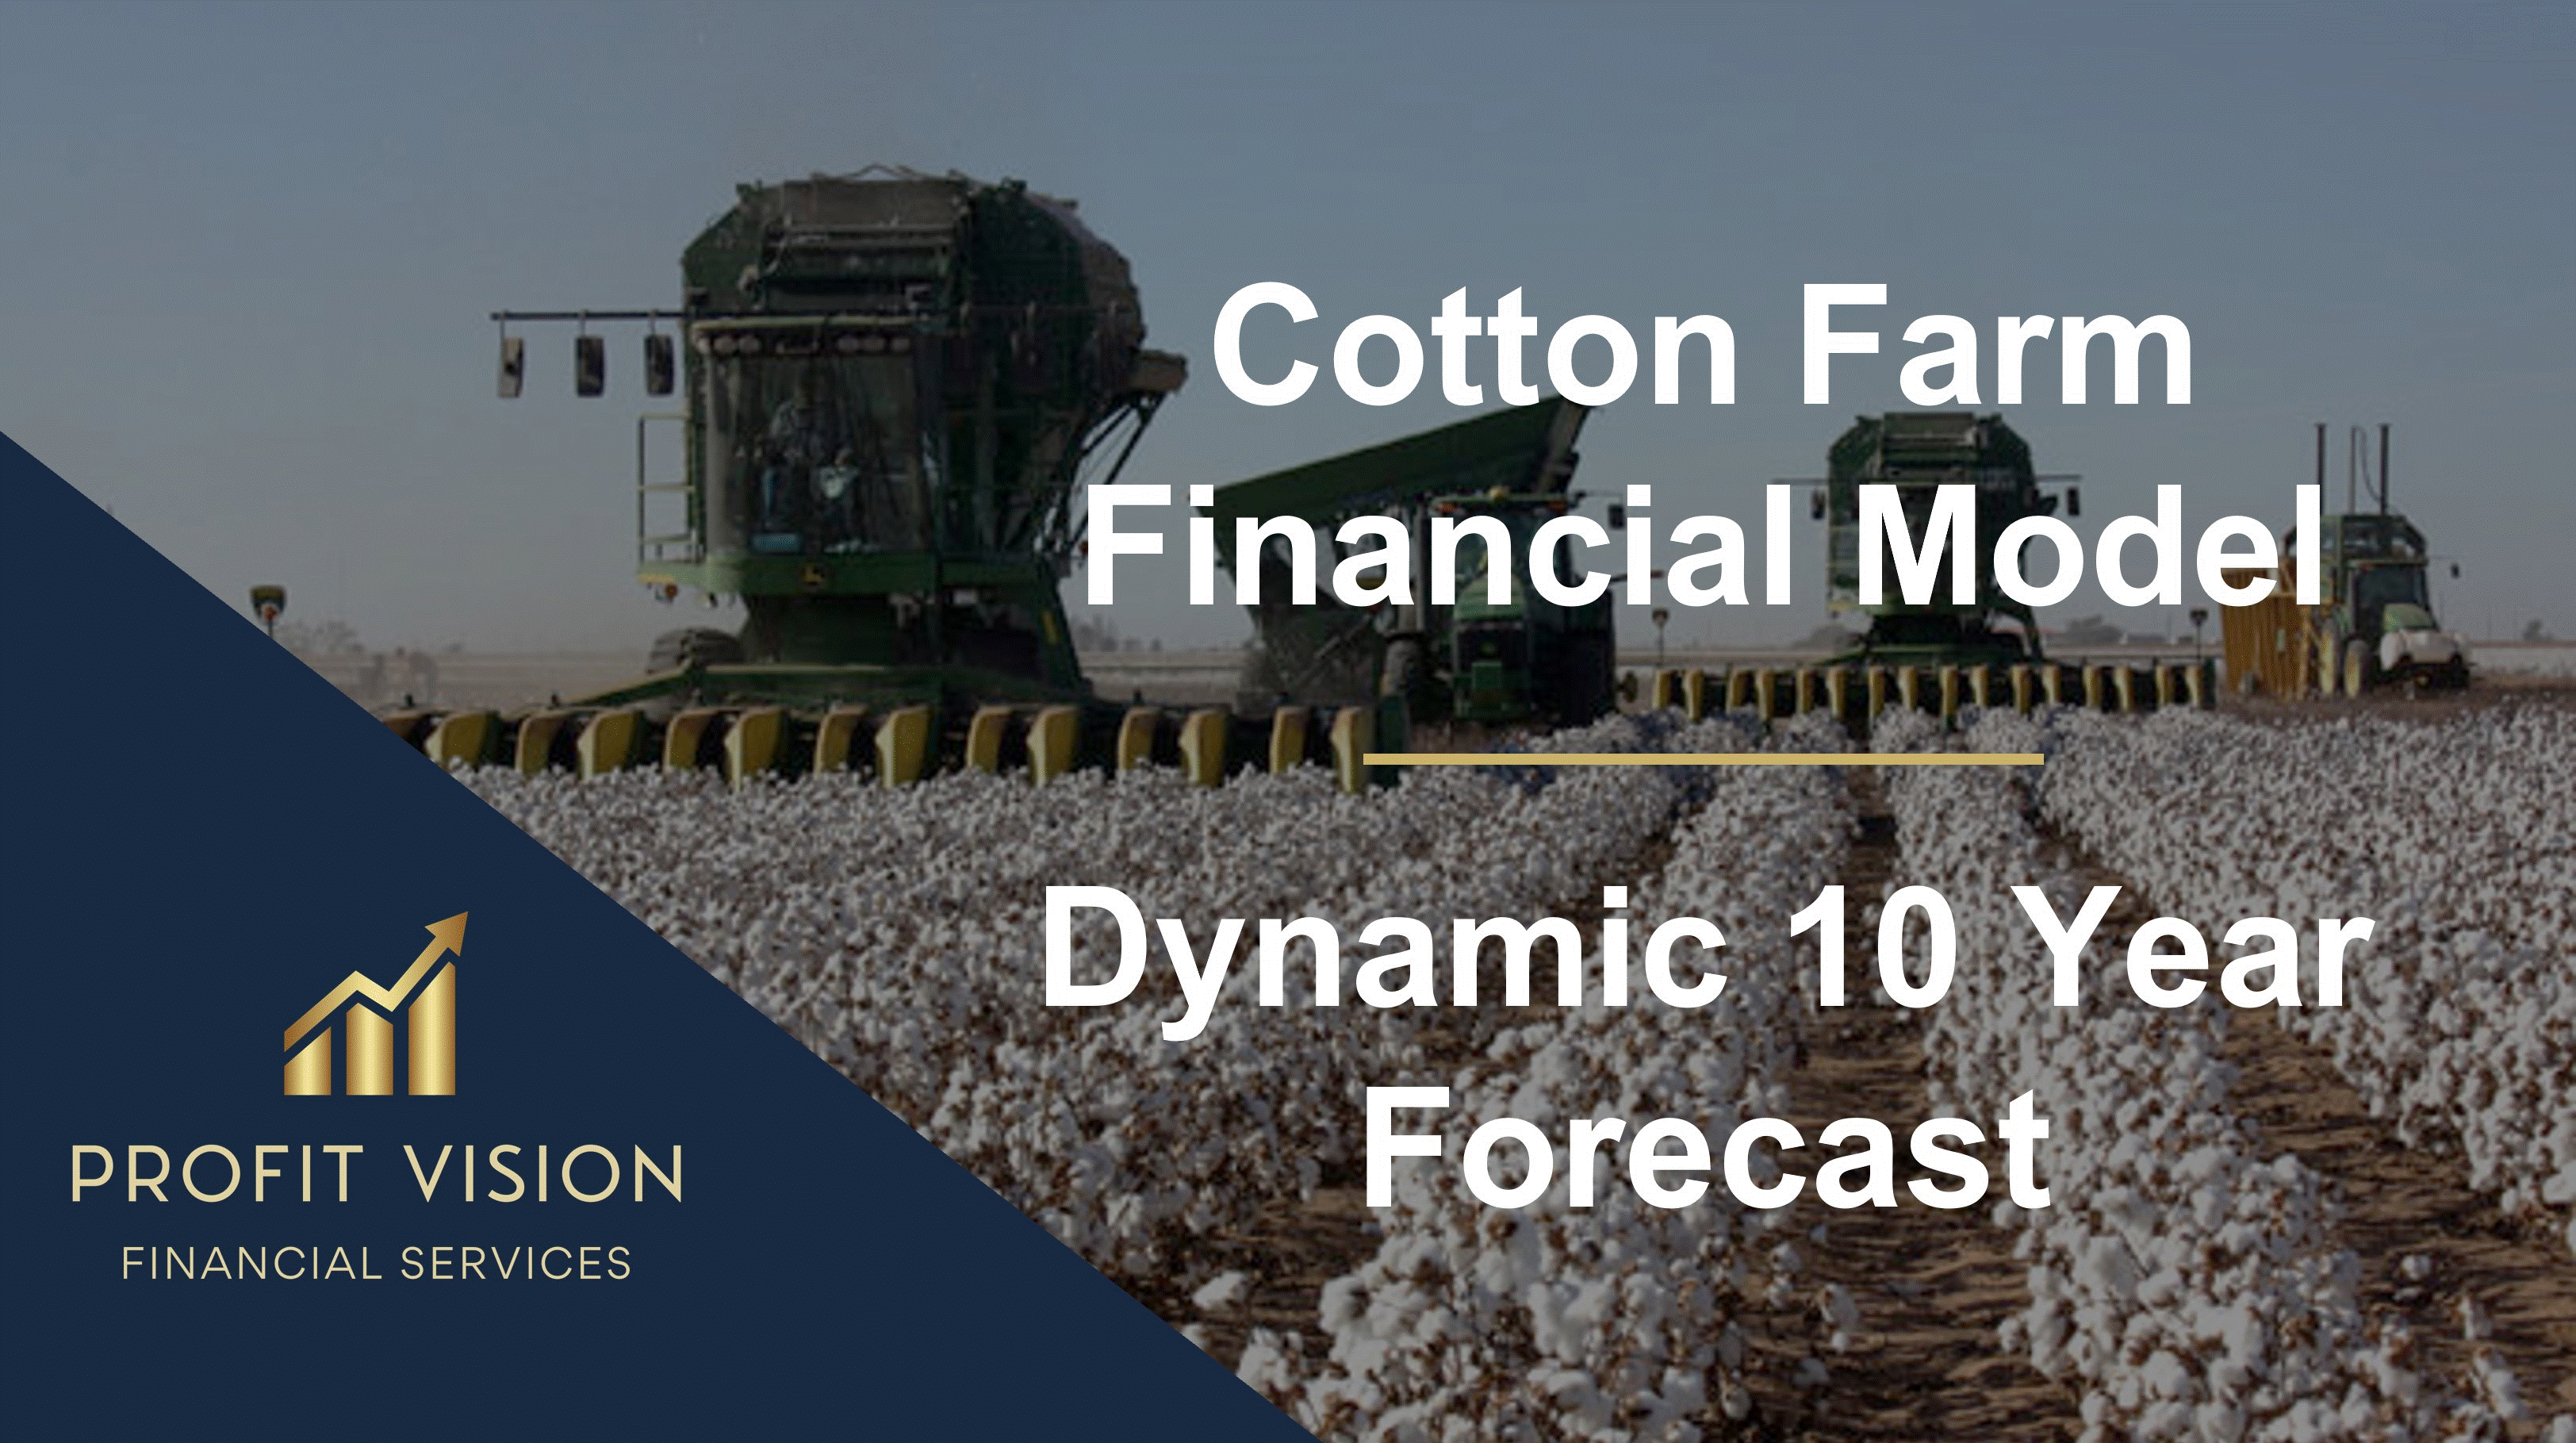 Cotton Farm Financial Model - Dynamic 10 Year Forecast